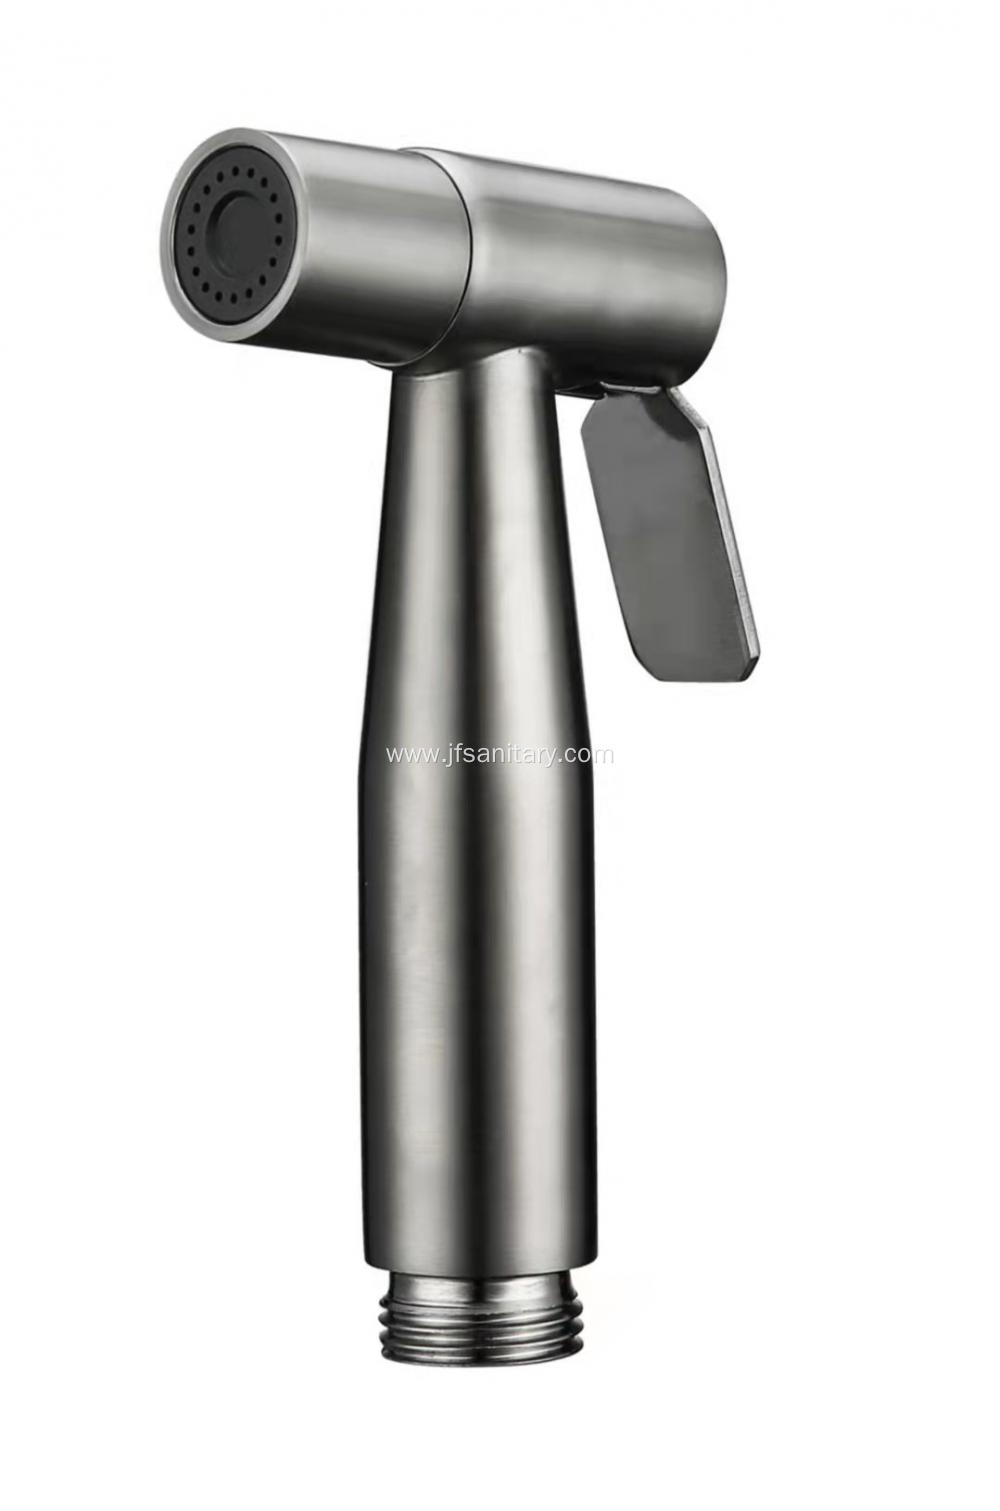 Stainless Steel Handheld Shower Sprayer For Toilet